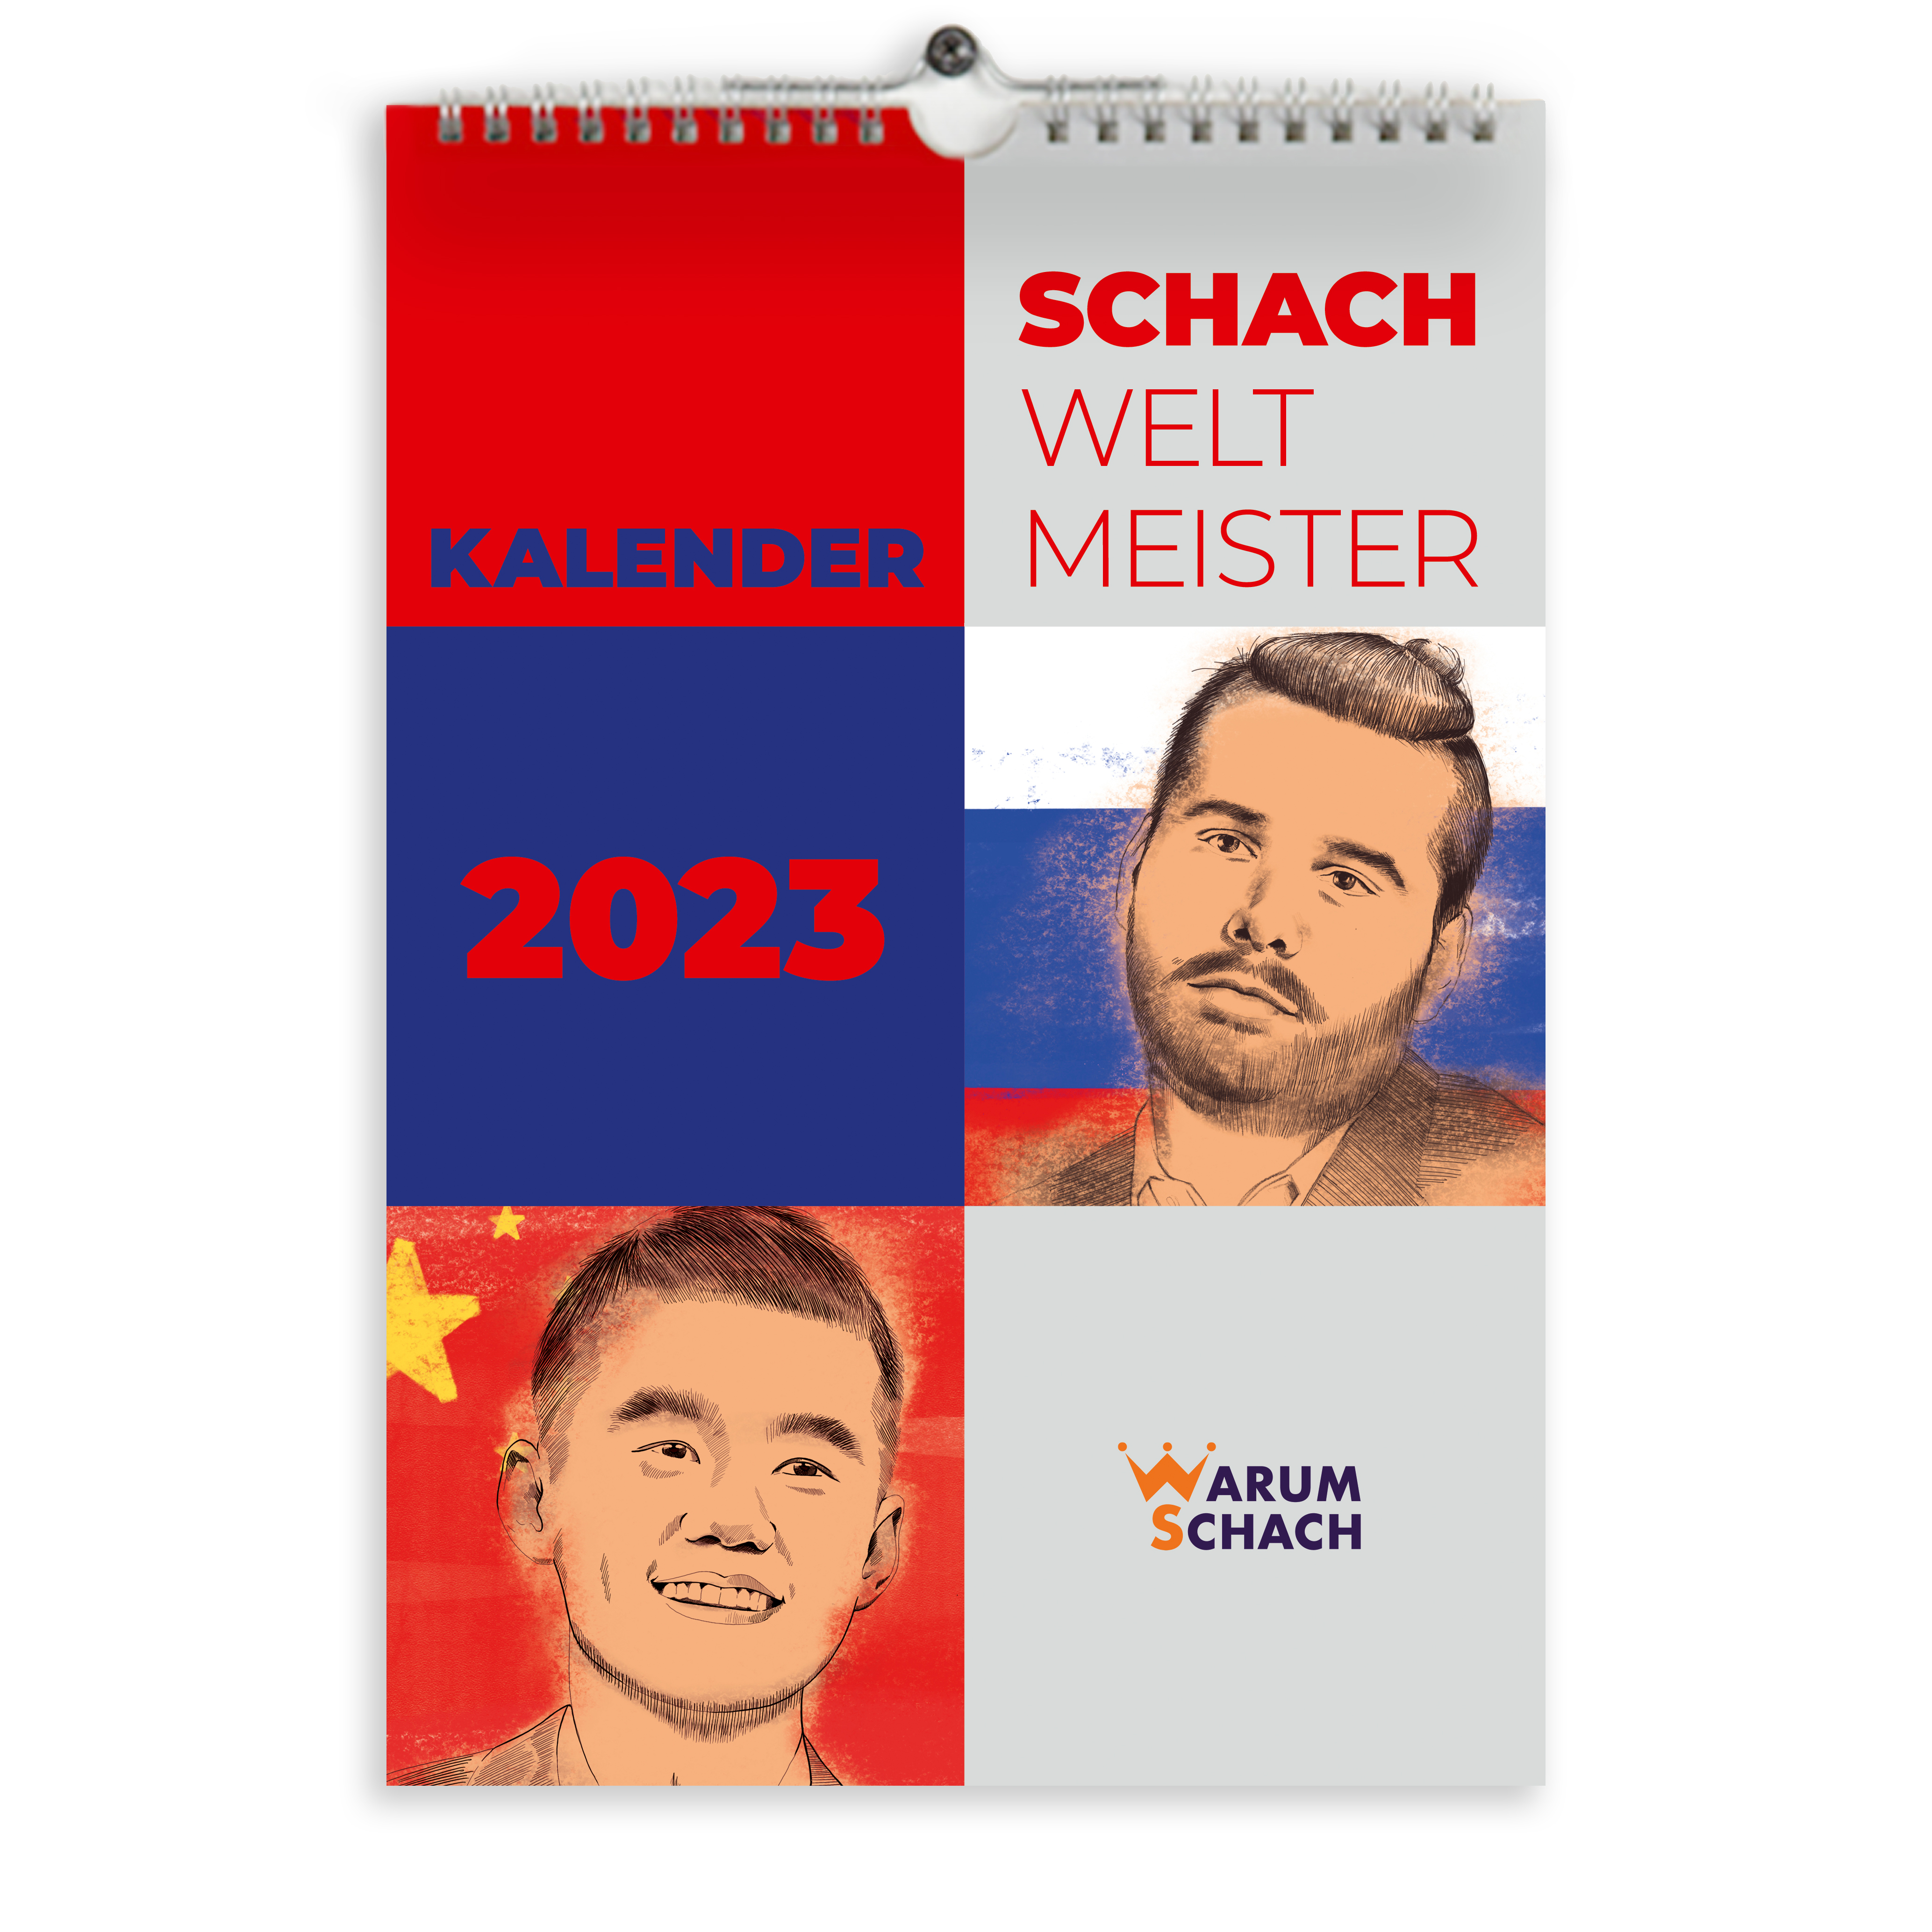 WarumSchach. Schachweltmeister-Wandkalender 2023.